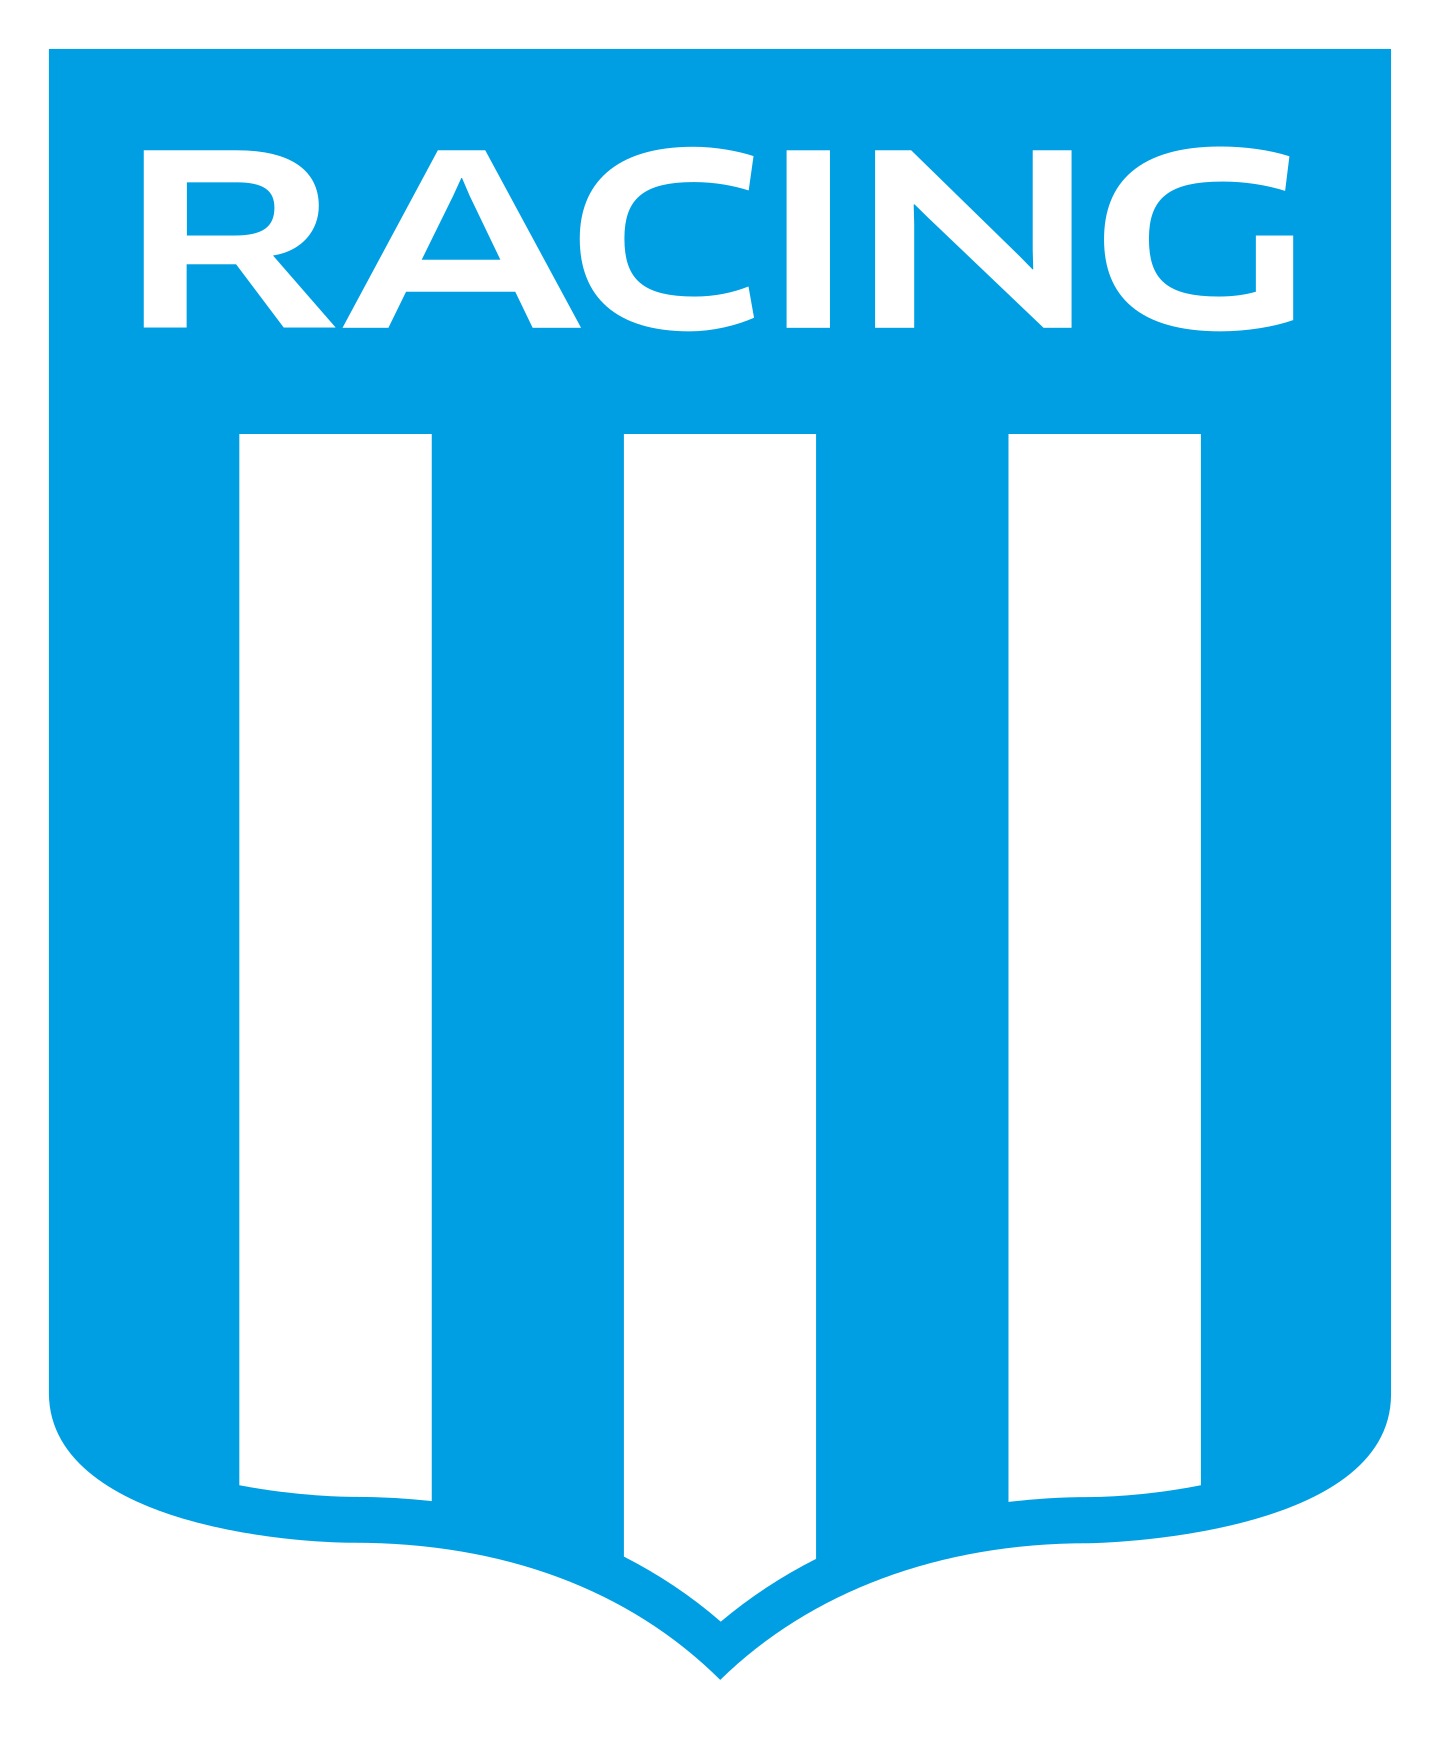 racing logo 1 - Racing Logo